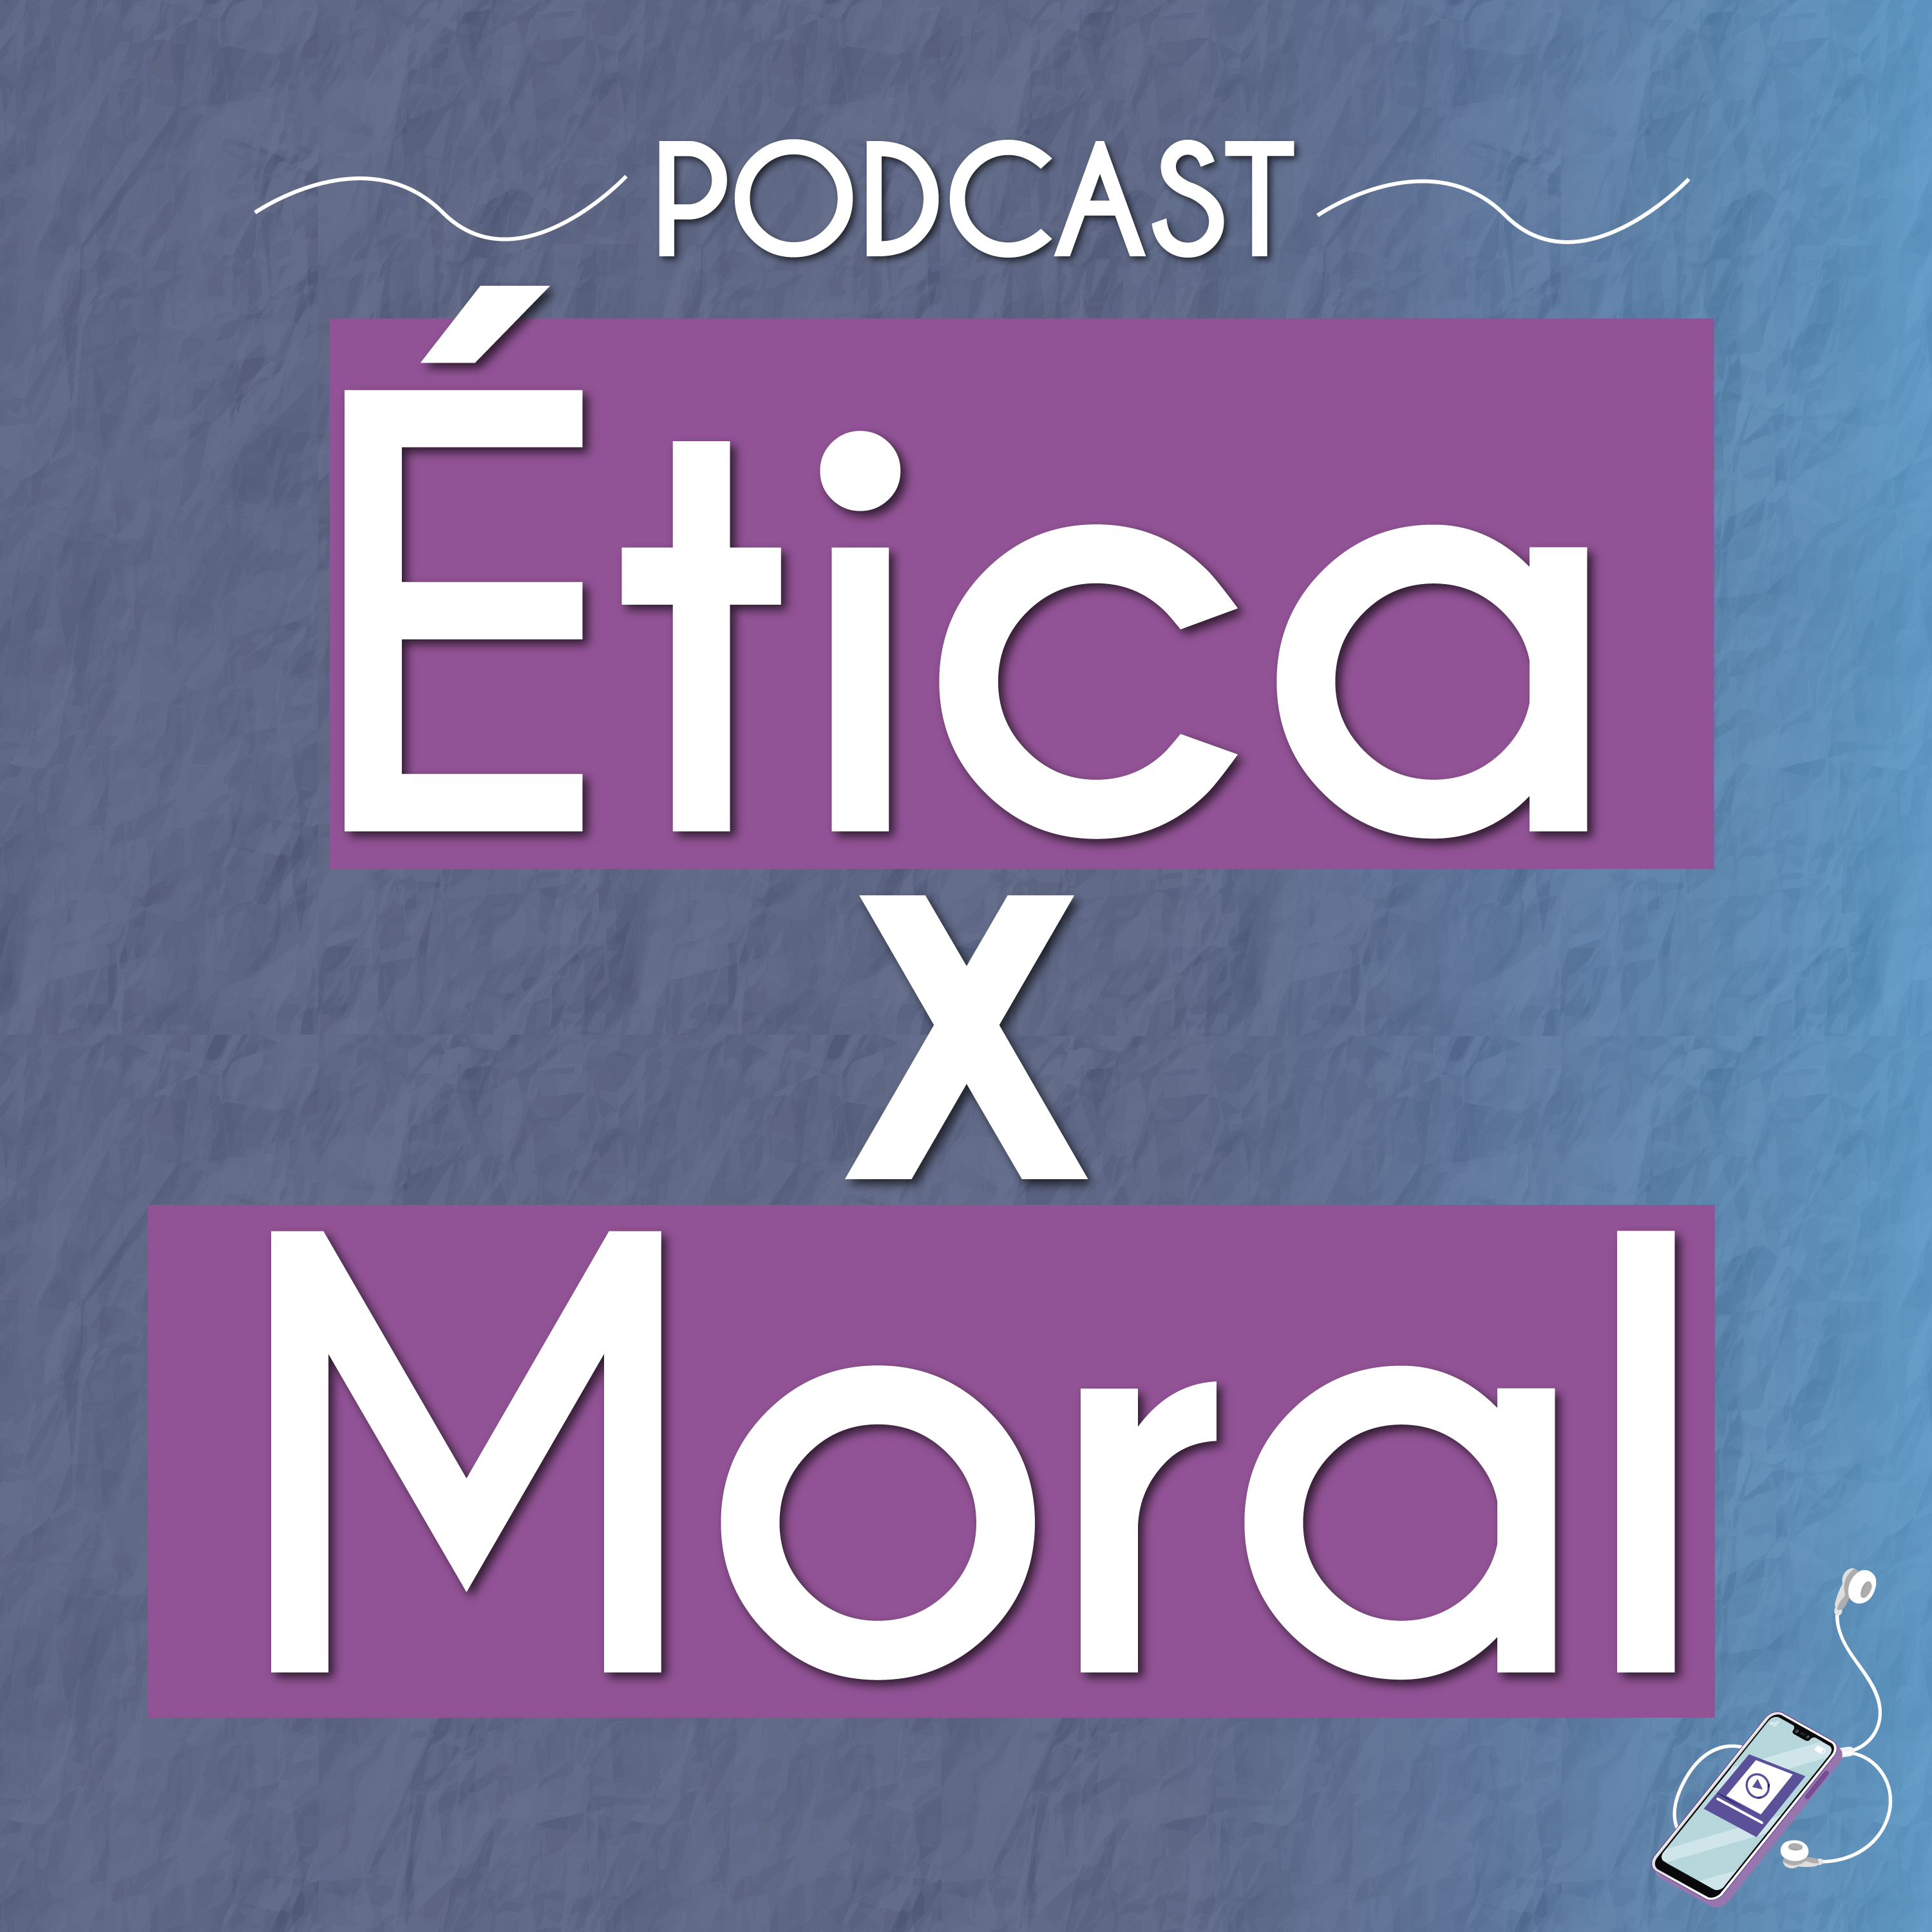 O que é moral? - Brasil Escola